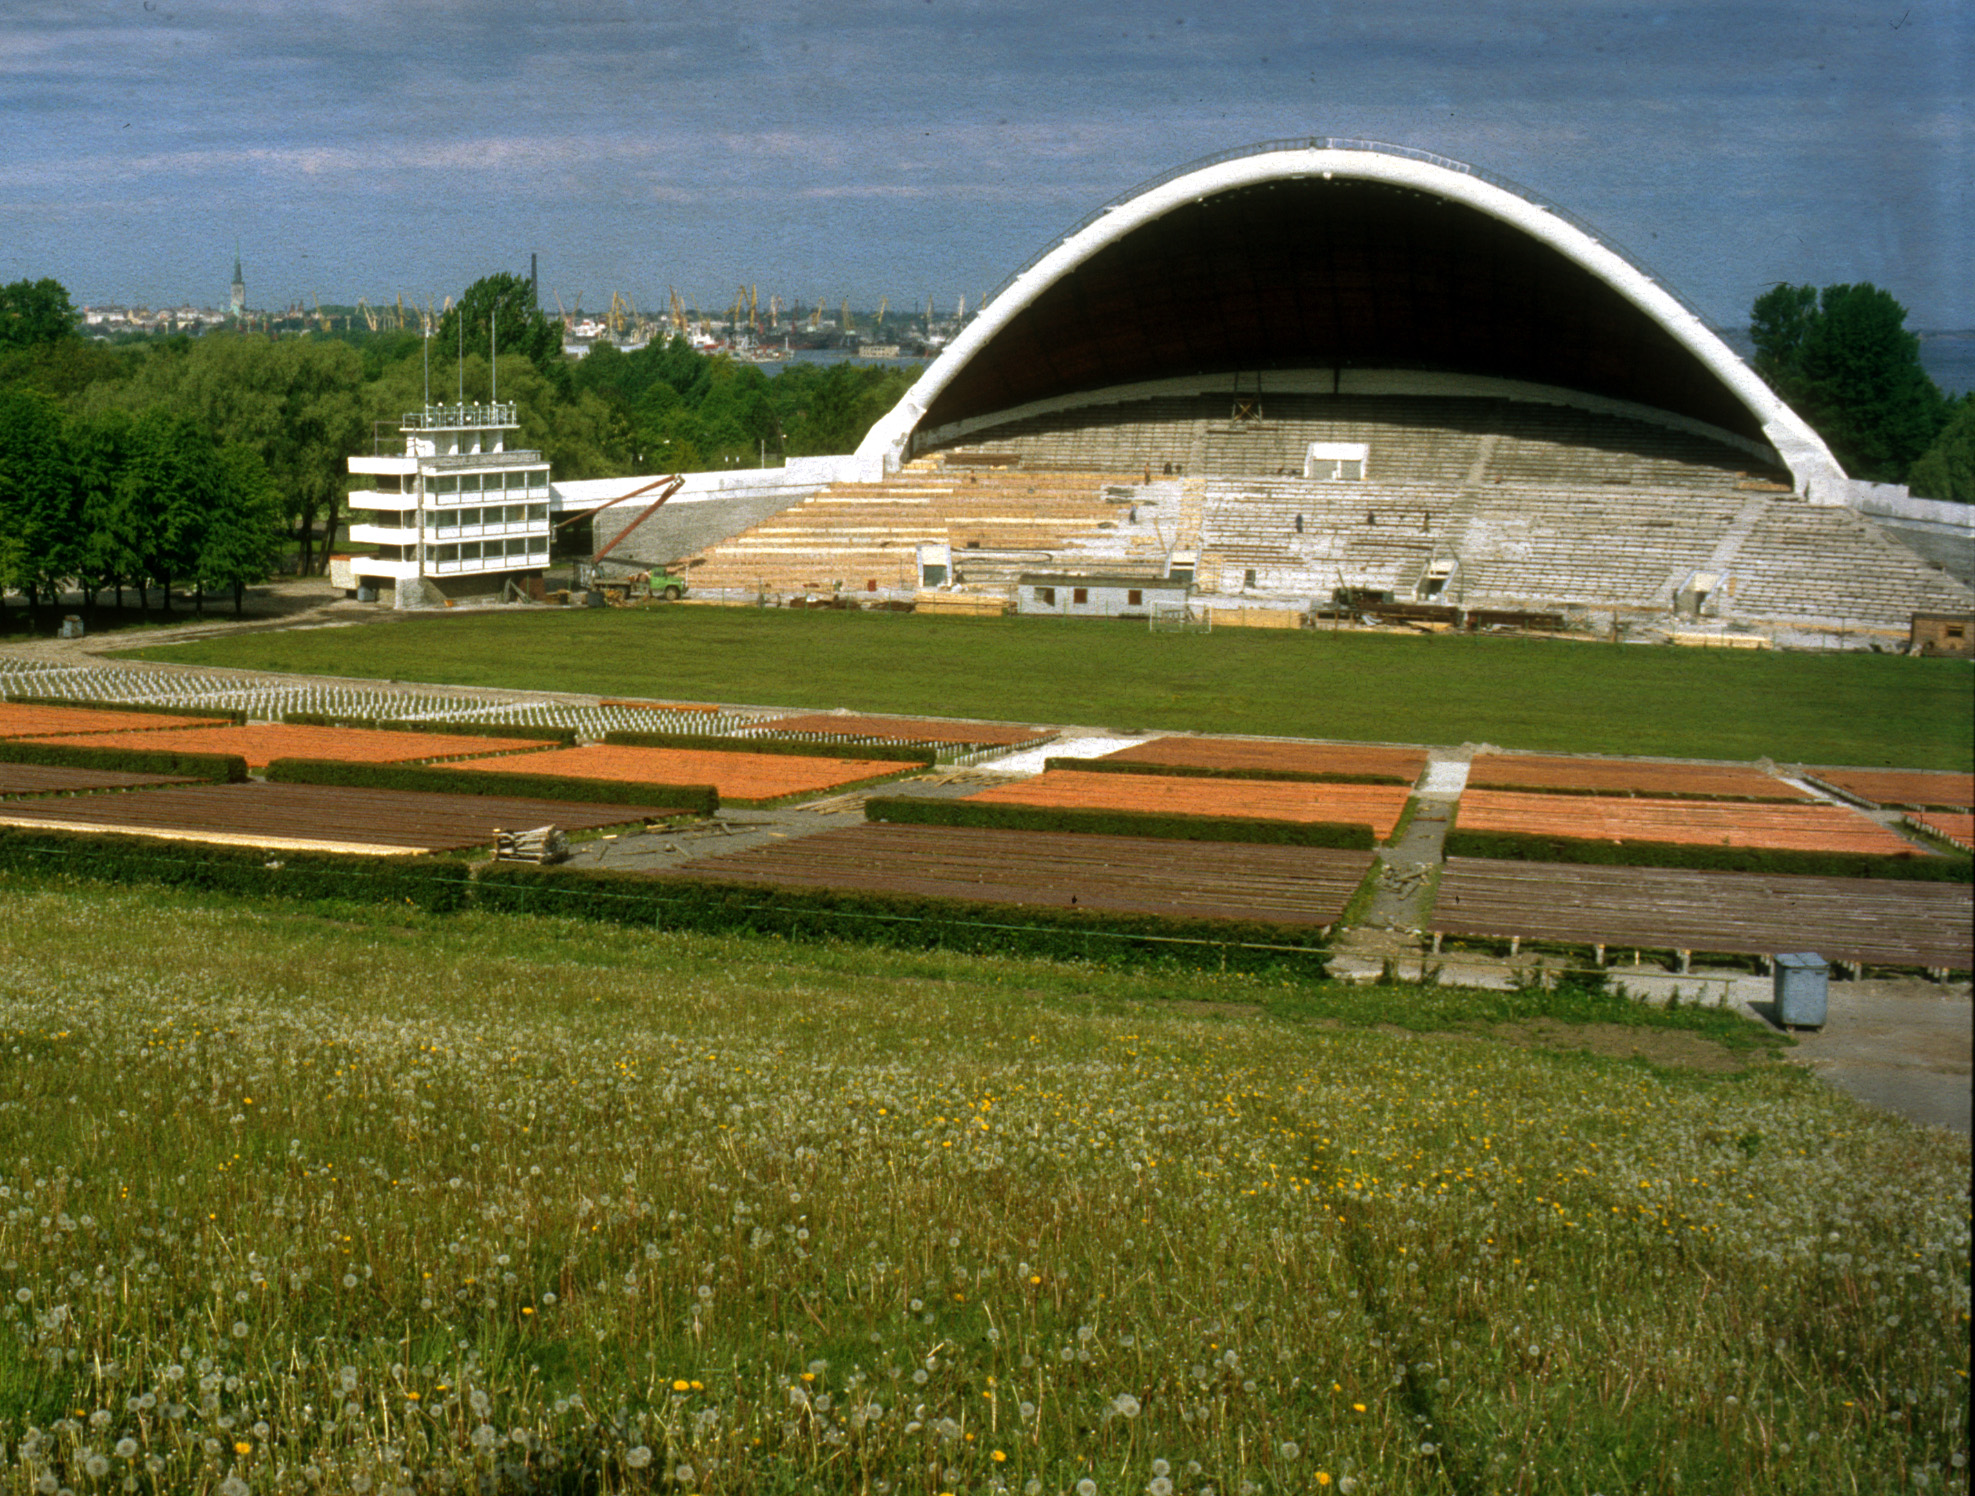 Lauluväljak, sångarfältet med plats för 30.000 sångare på estraden, spelade en avgörande roll för Estlands "sjungande revolution".